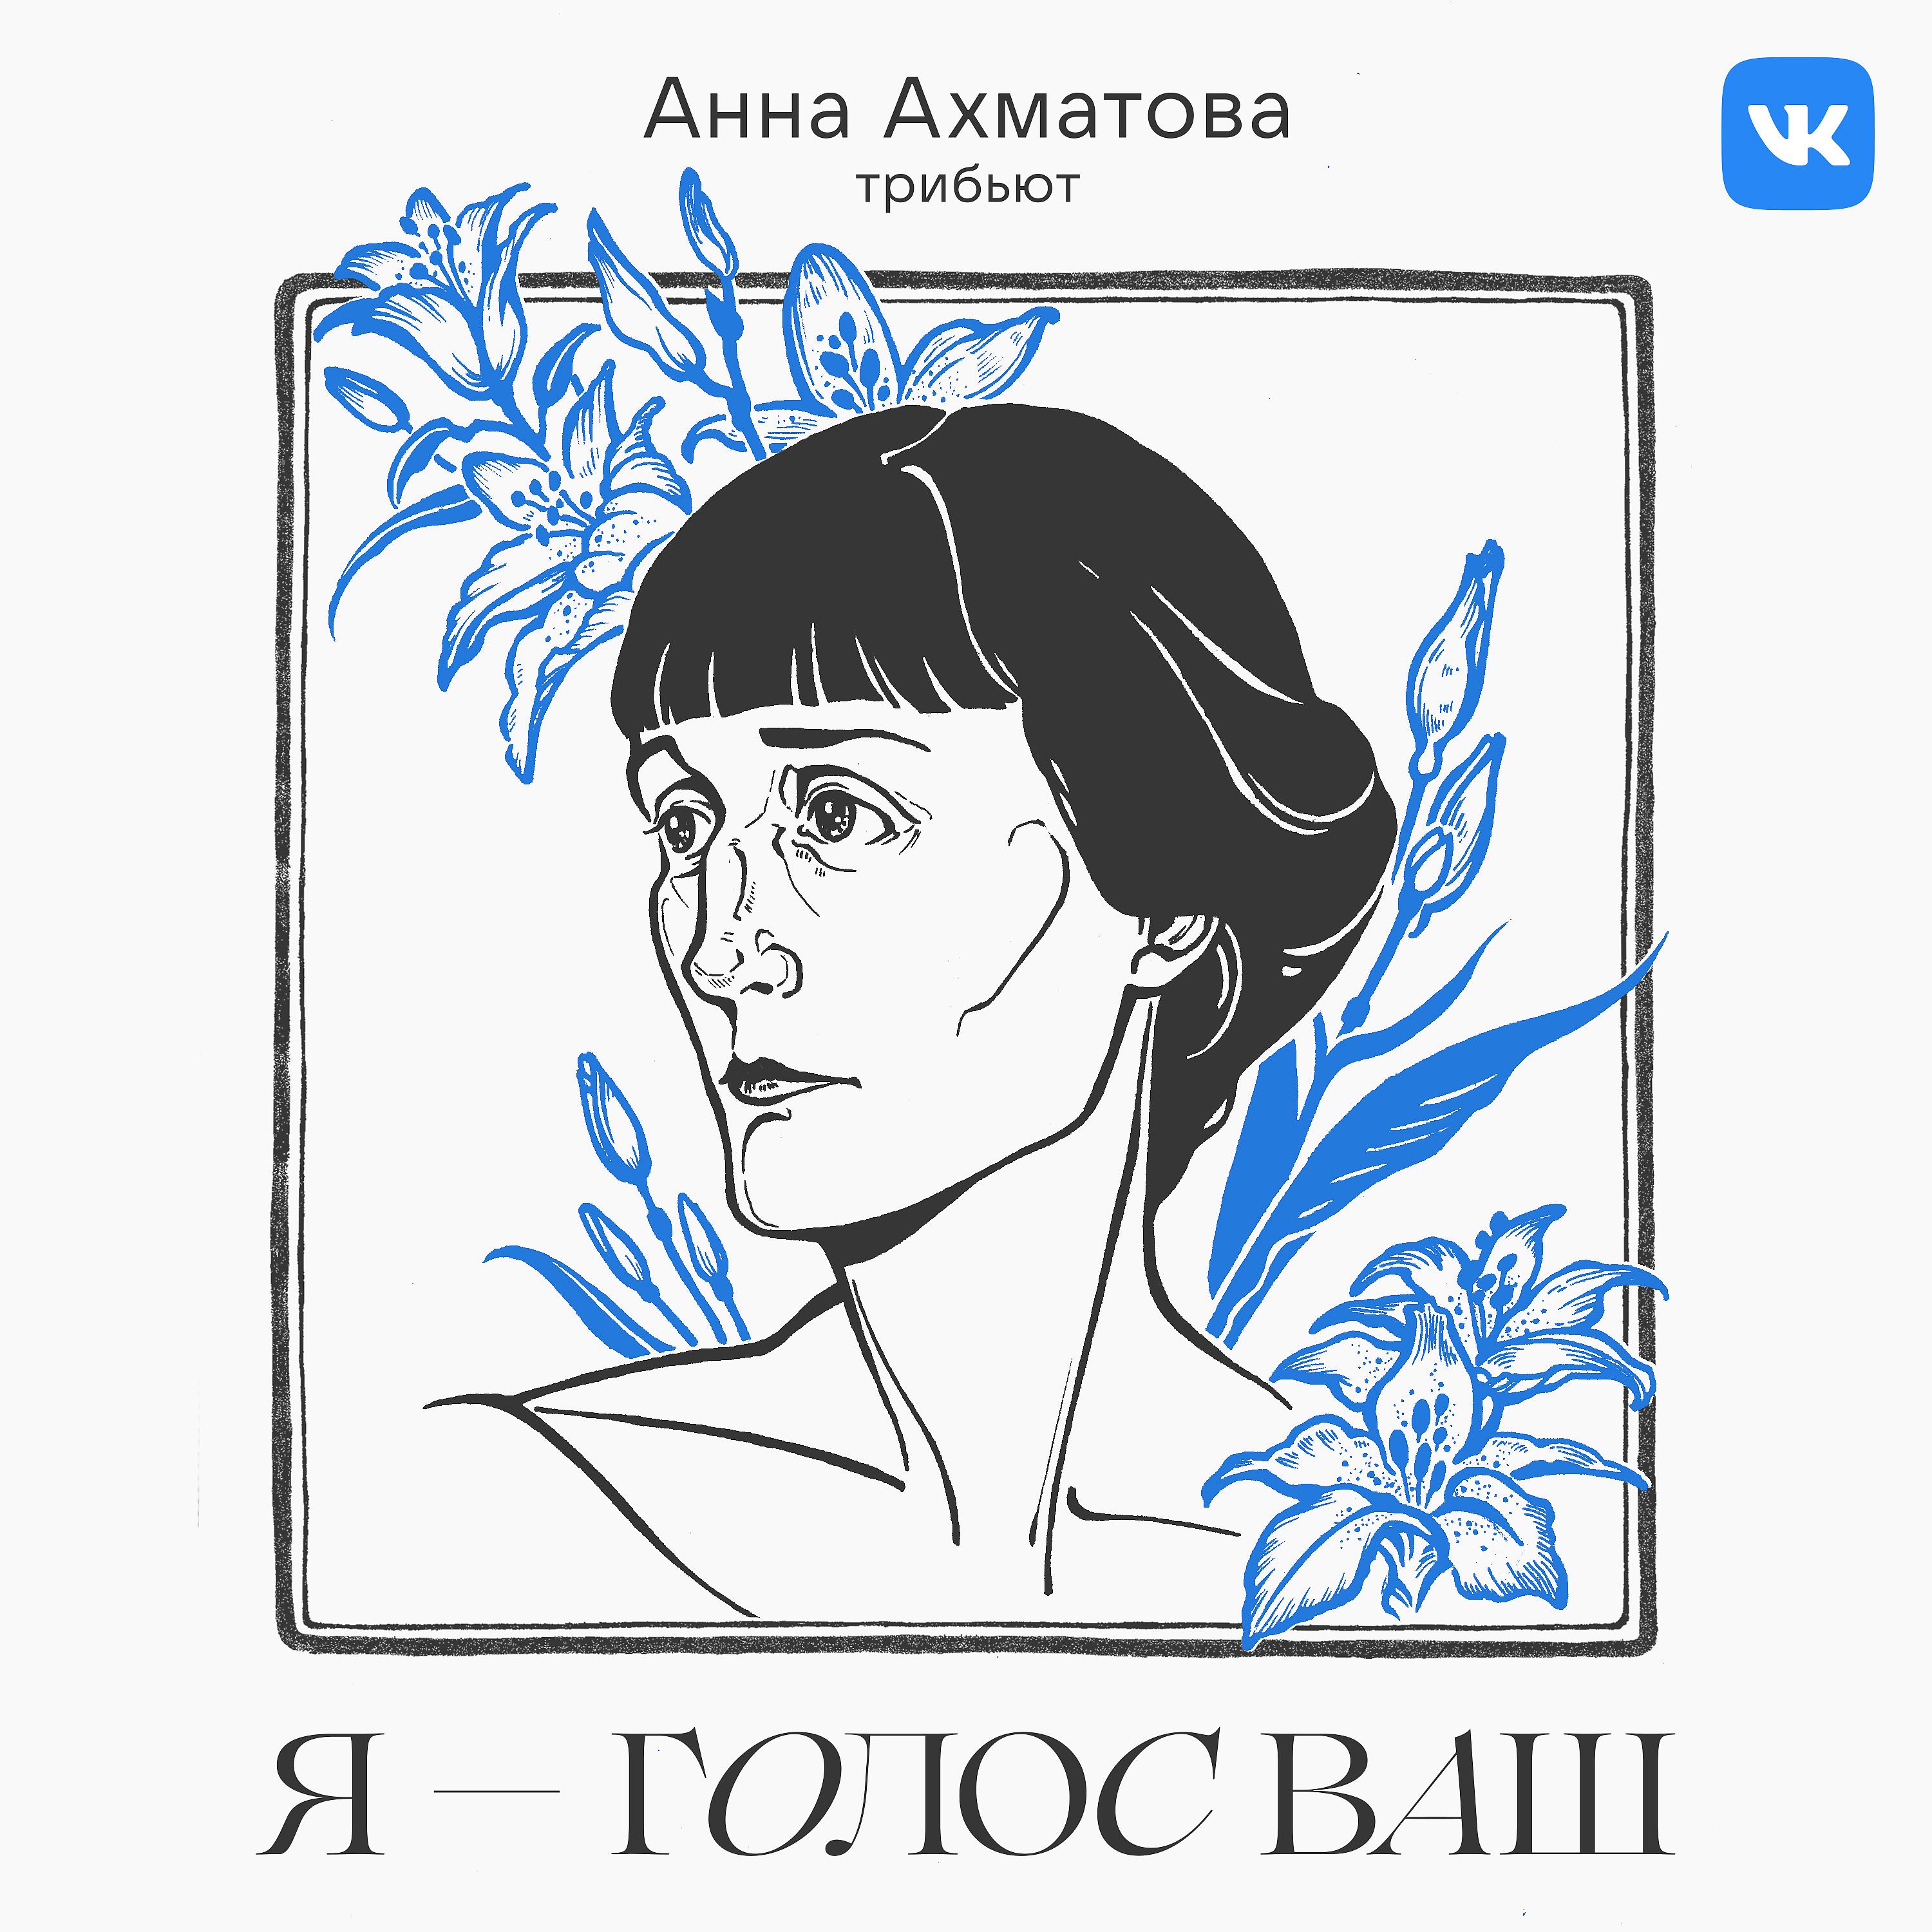 Ахматова рот от гнева перекошен. Трибьют Анны Ахматовой. Ахматова портрет.